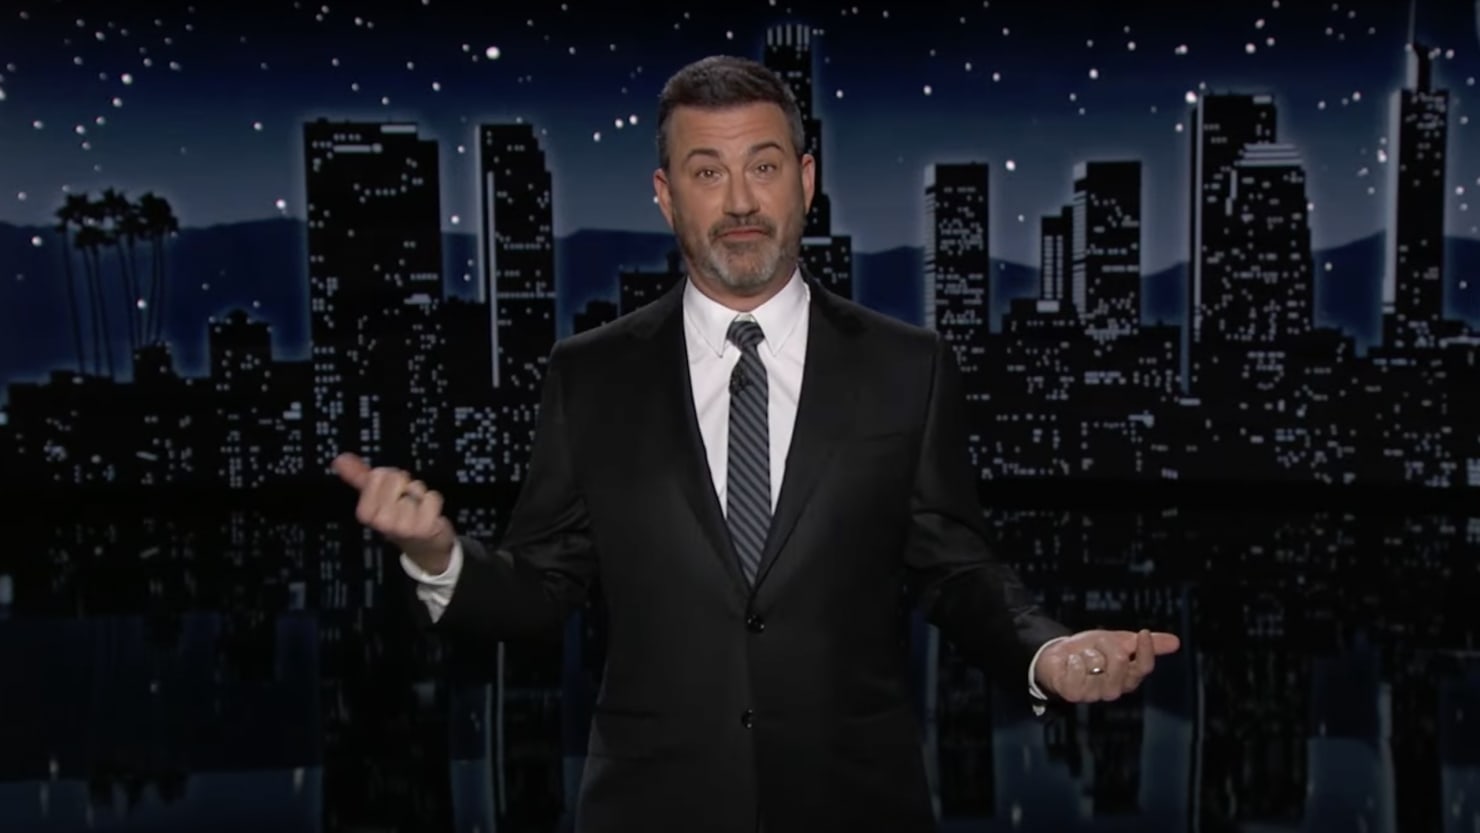 Jimmy Kimmel Mocks Lara Trump’s ‘Big New Lips’ After Bizarre Fox News Appearance